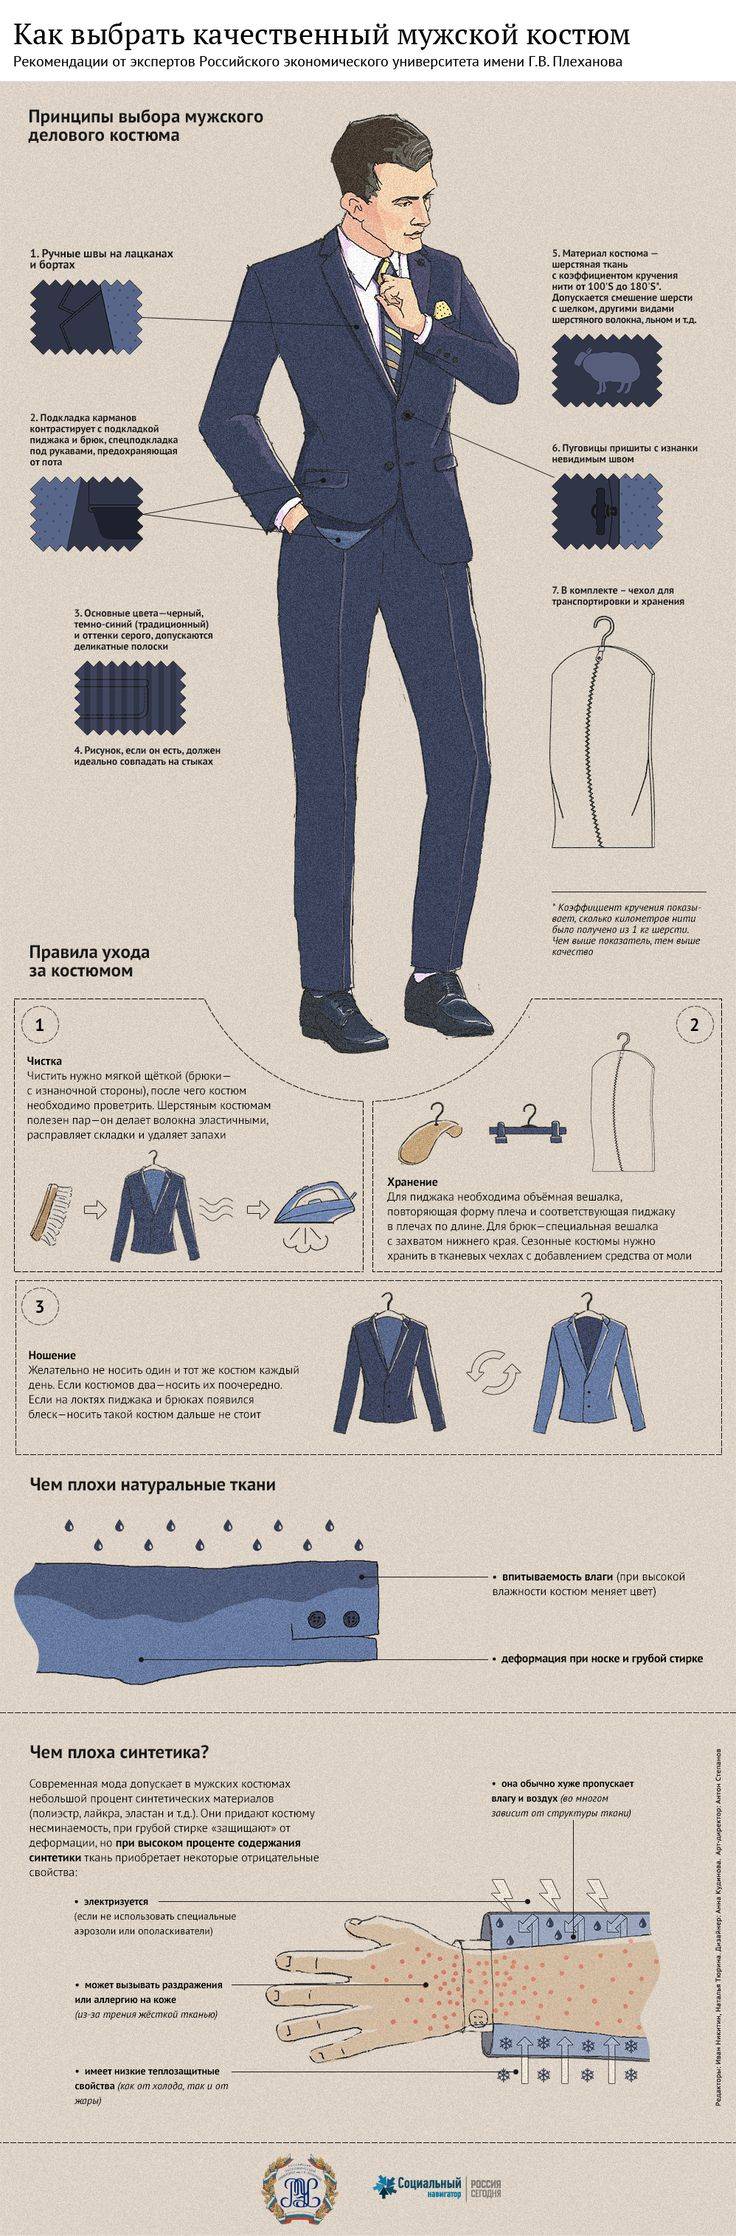 Как стильно одеваться мужчине: фото и советы. советы для крупных мужчин: как подбирать одежду, чтобы не казаться толстым